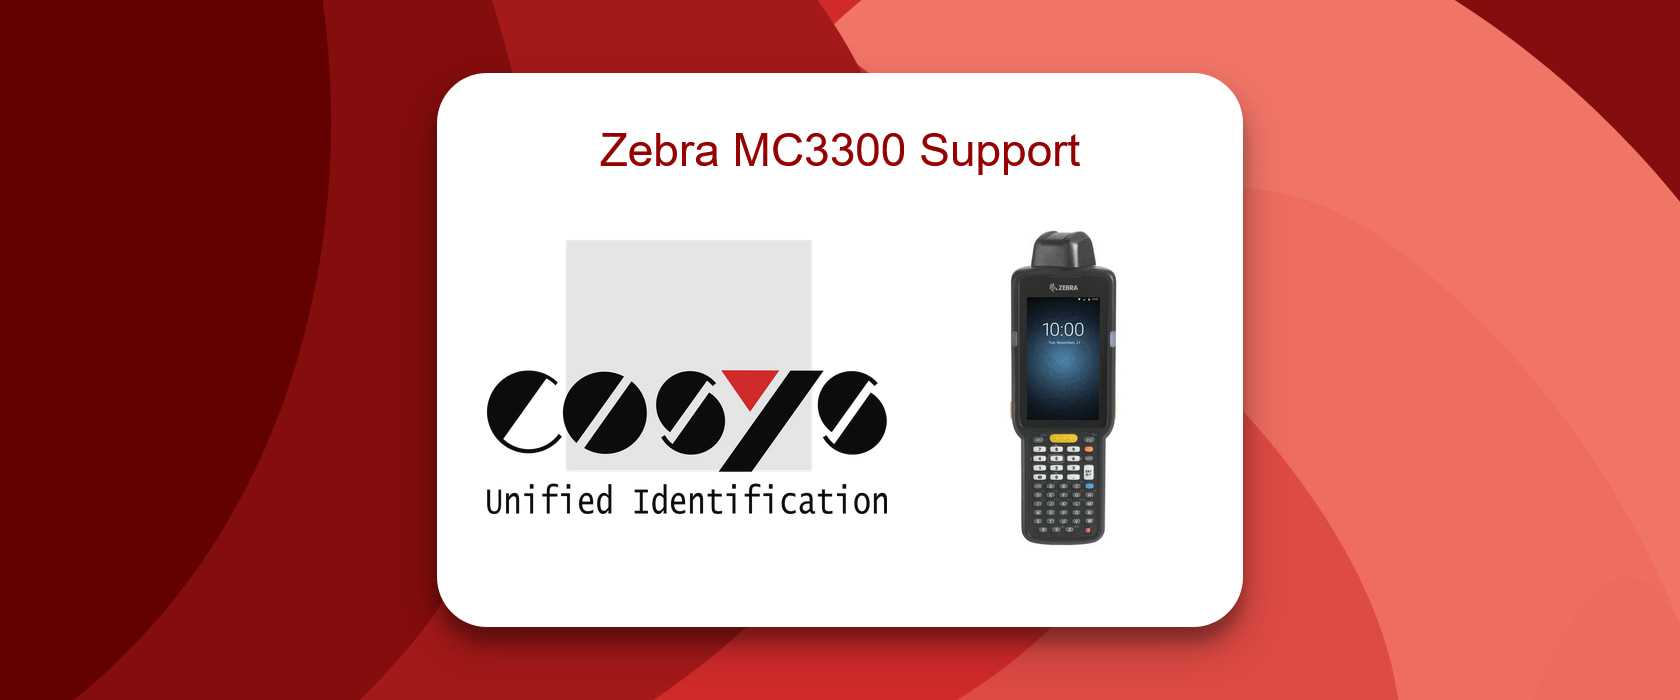 Zebra MC3300 Handheld im Einsatz